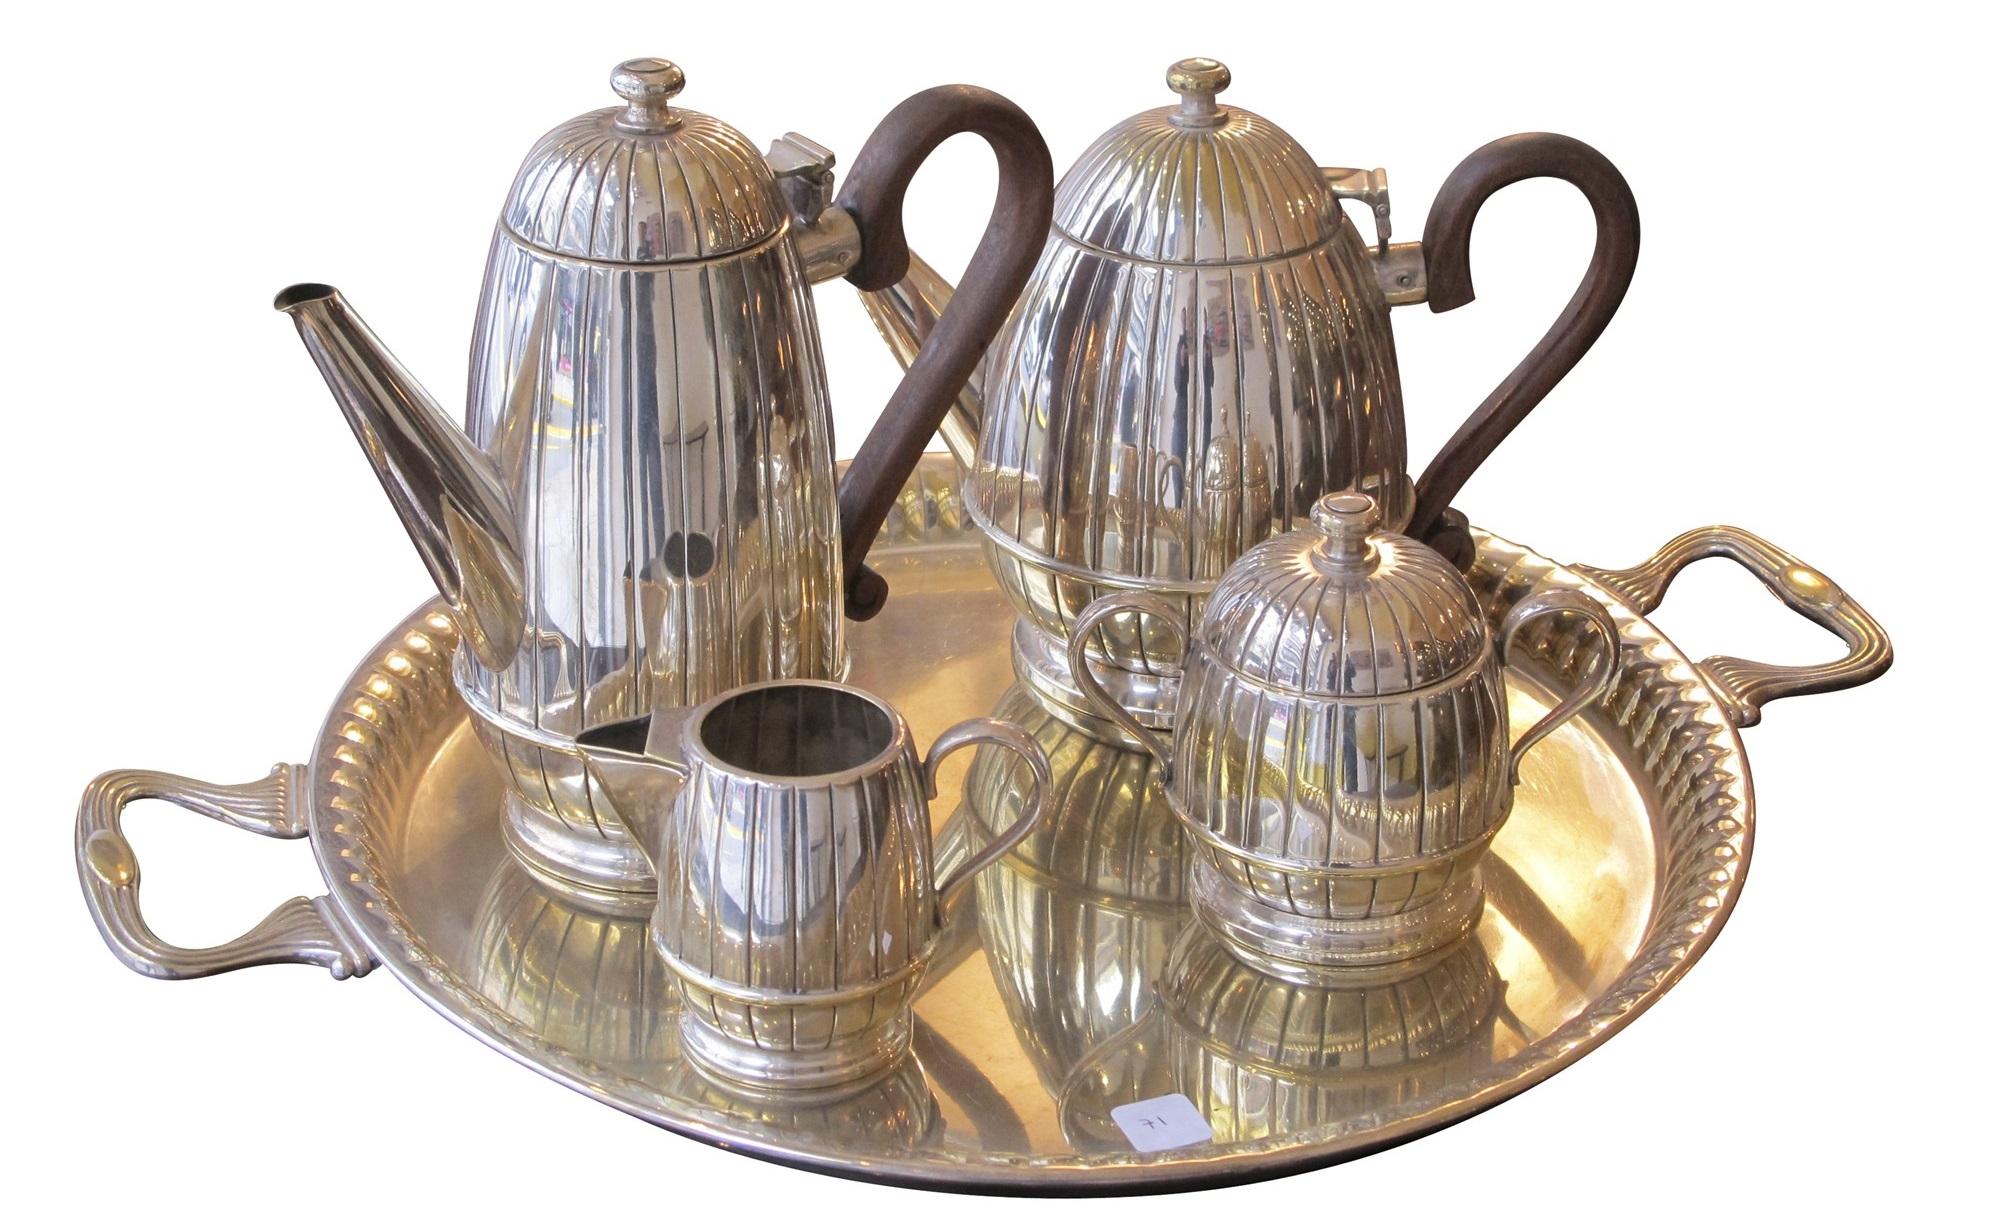 Service complet de thé et de café
Signe : Atenea
MATERIAL : argenté et bois
Nous sommes spécialisés dans la vente de produits Art Déco et Art Nouveau et Vintage depuis 1982. Si vous avez des questions, nous sommes à votre disposition.
En appuyant